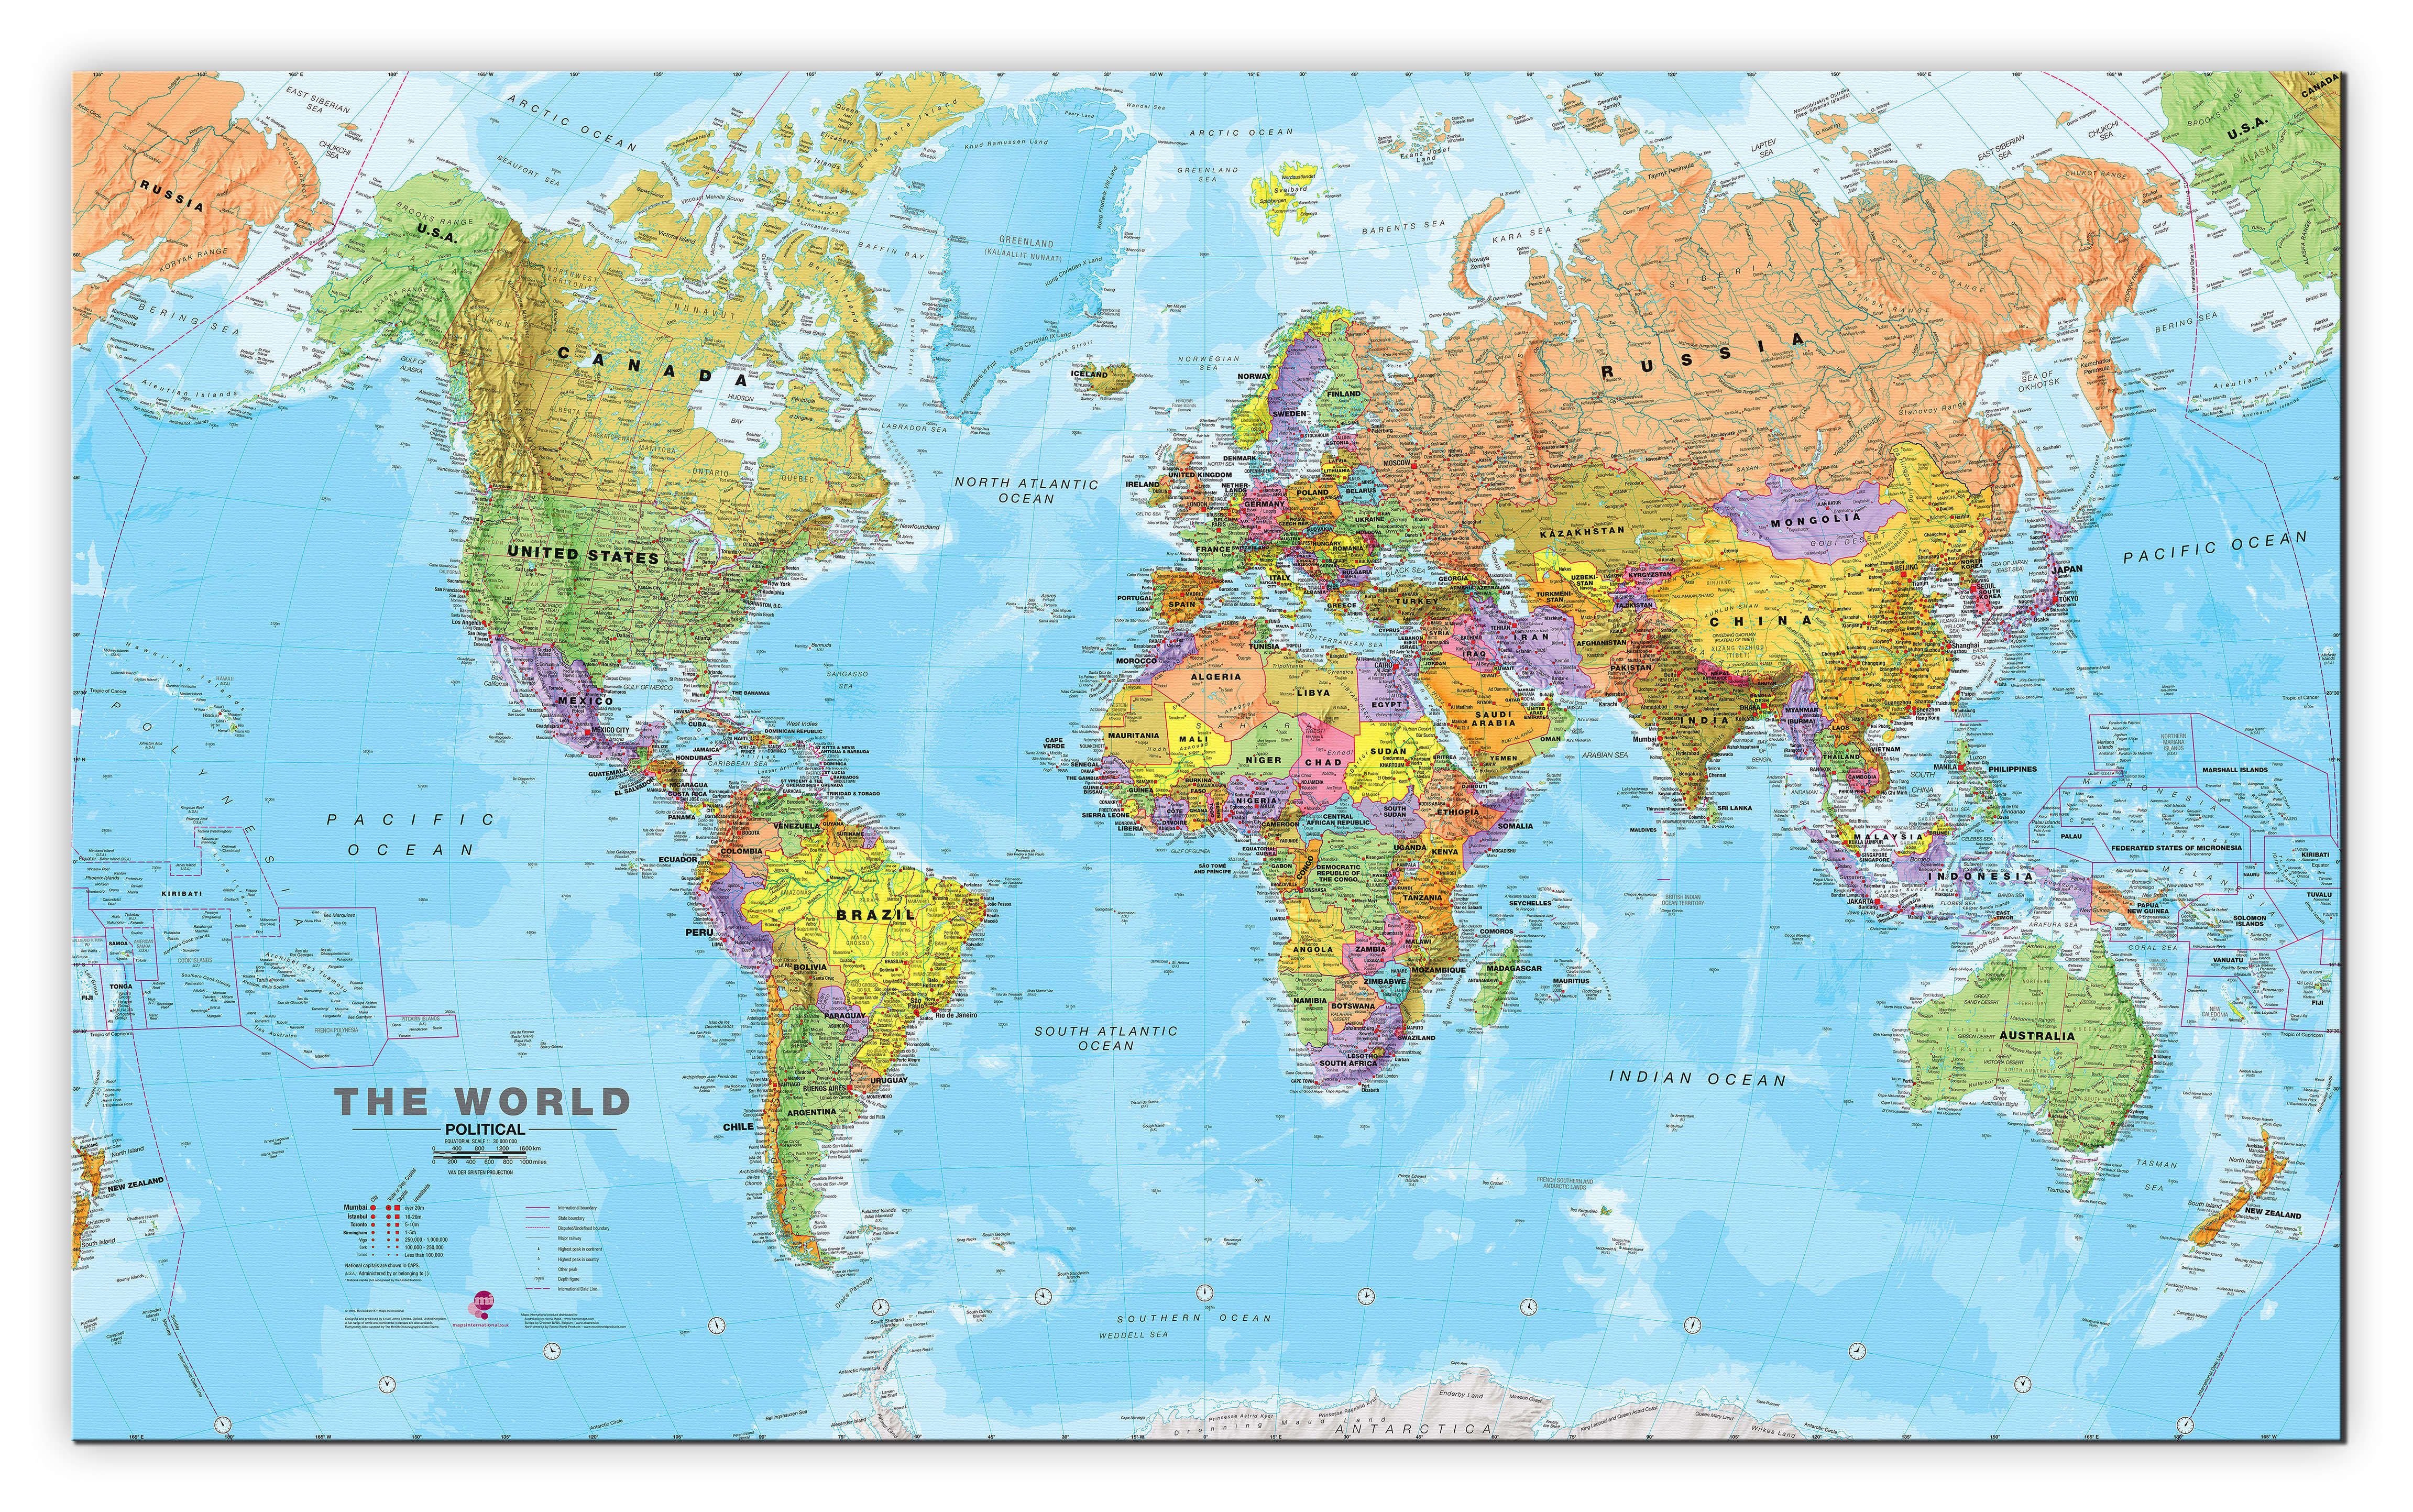 我们看到的世界地图大部分是太平洋在中间,环太平洋国家都能够清晰的